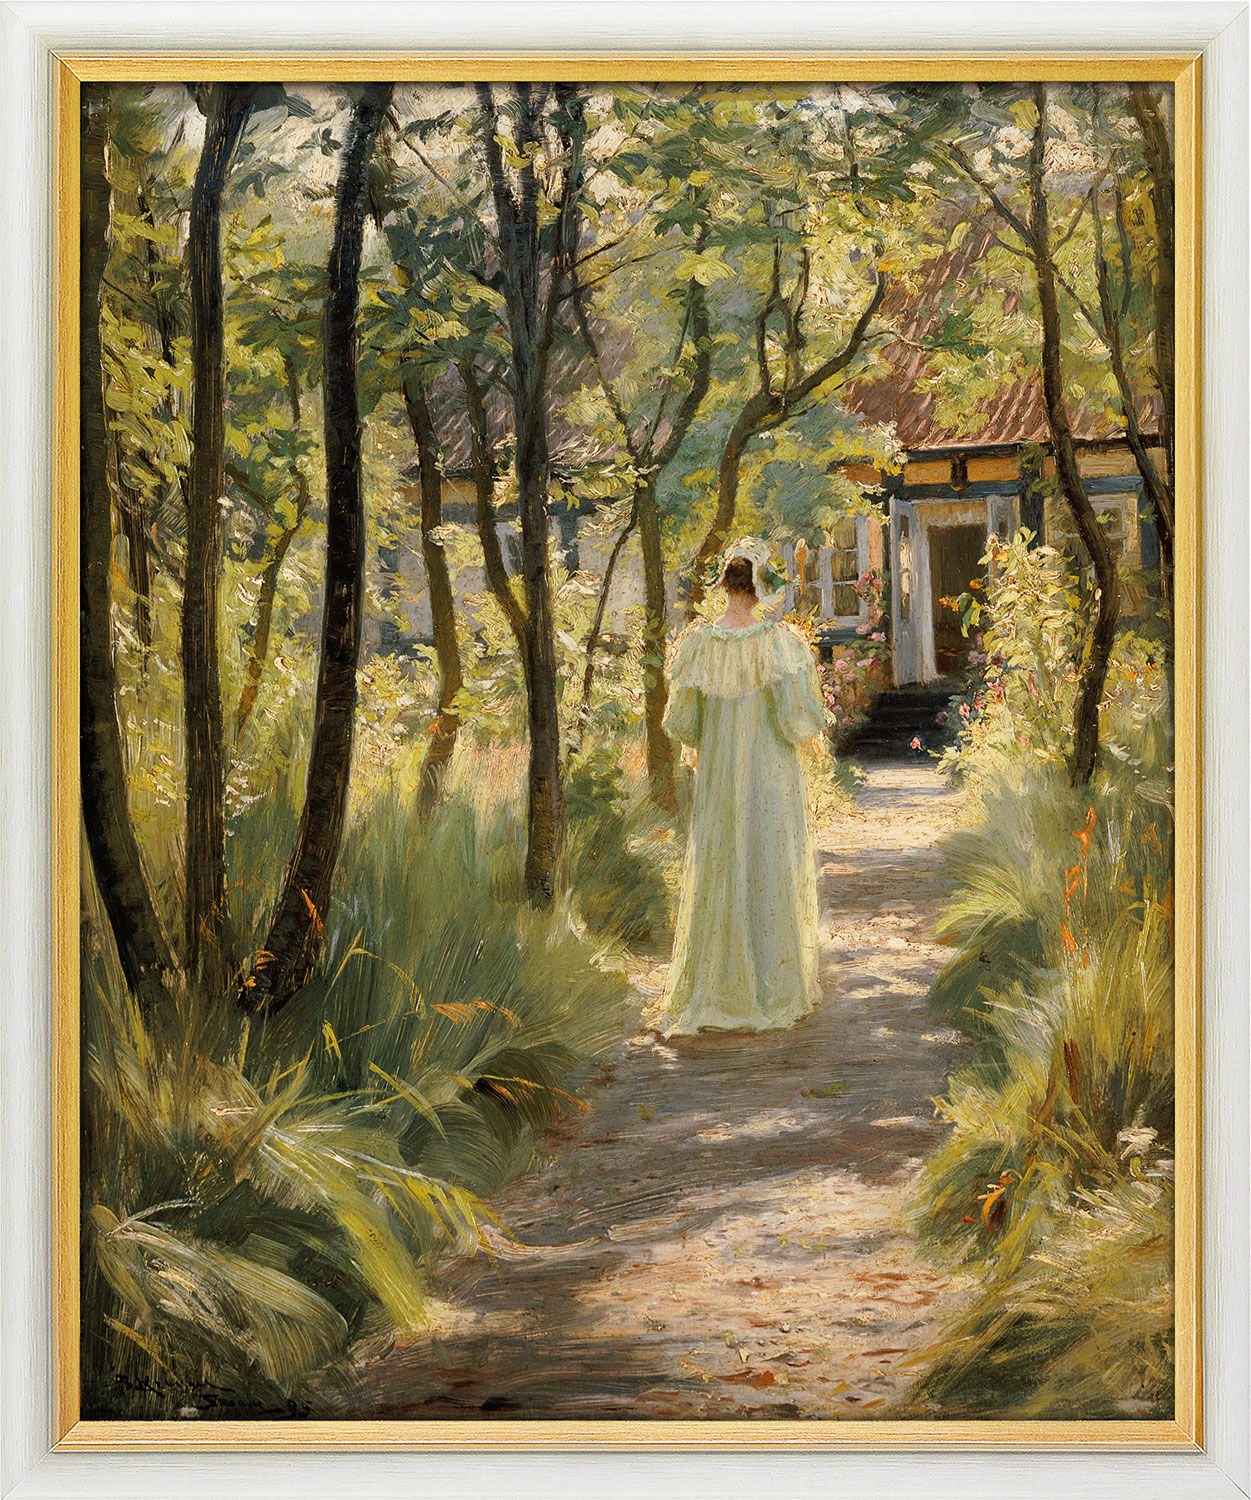 Billede "Marie, kunstnerens kone, i haven" (1895), indrammet von Peder Severin Kroyer